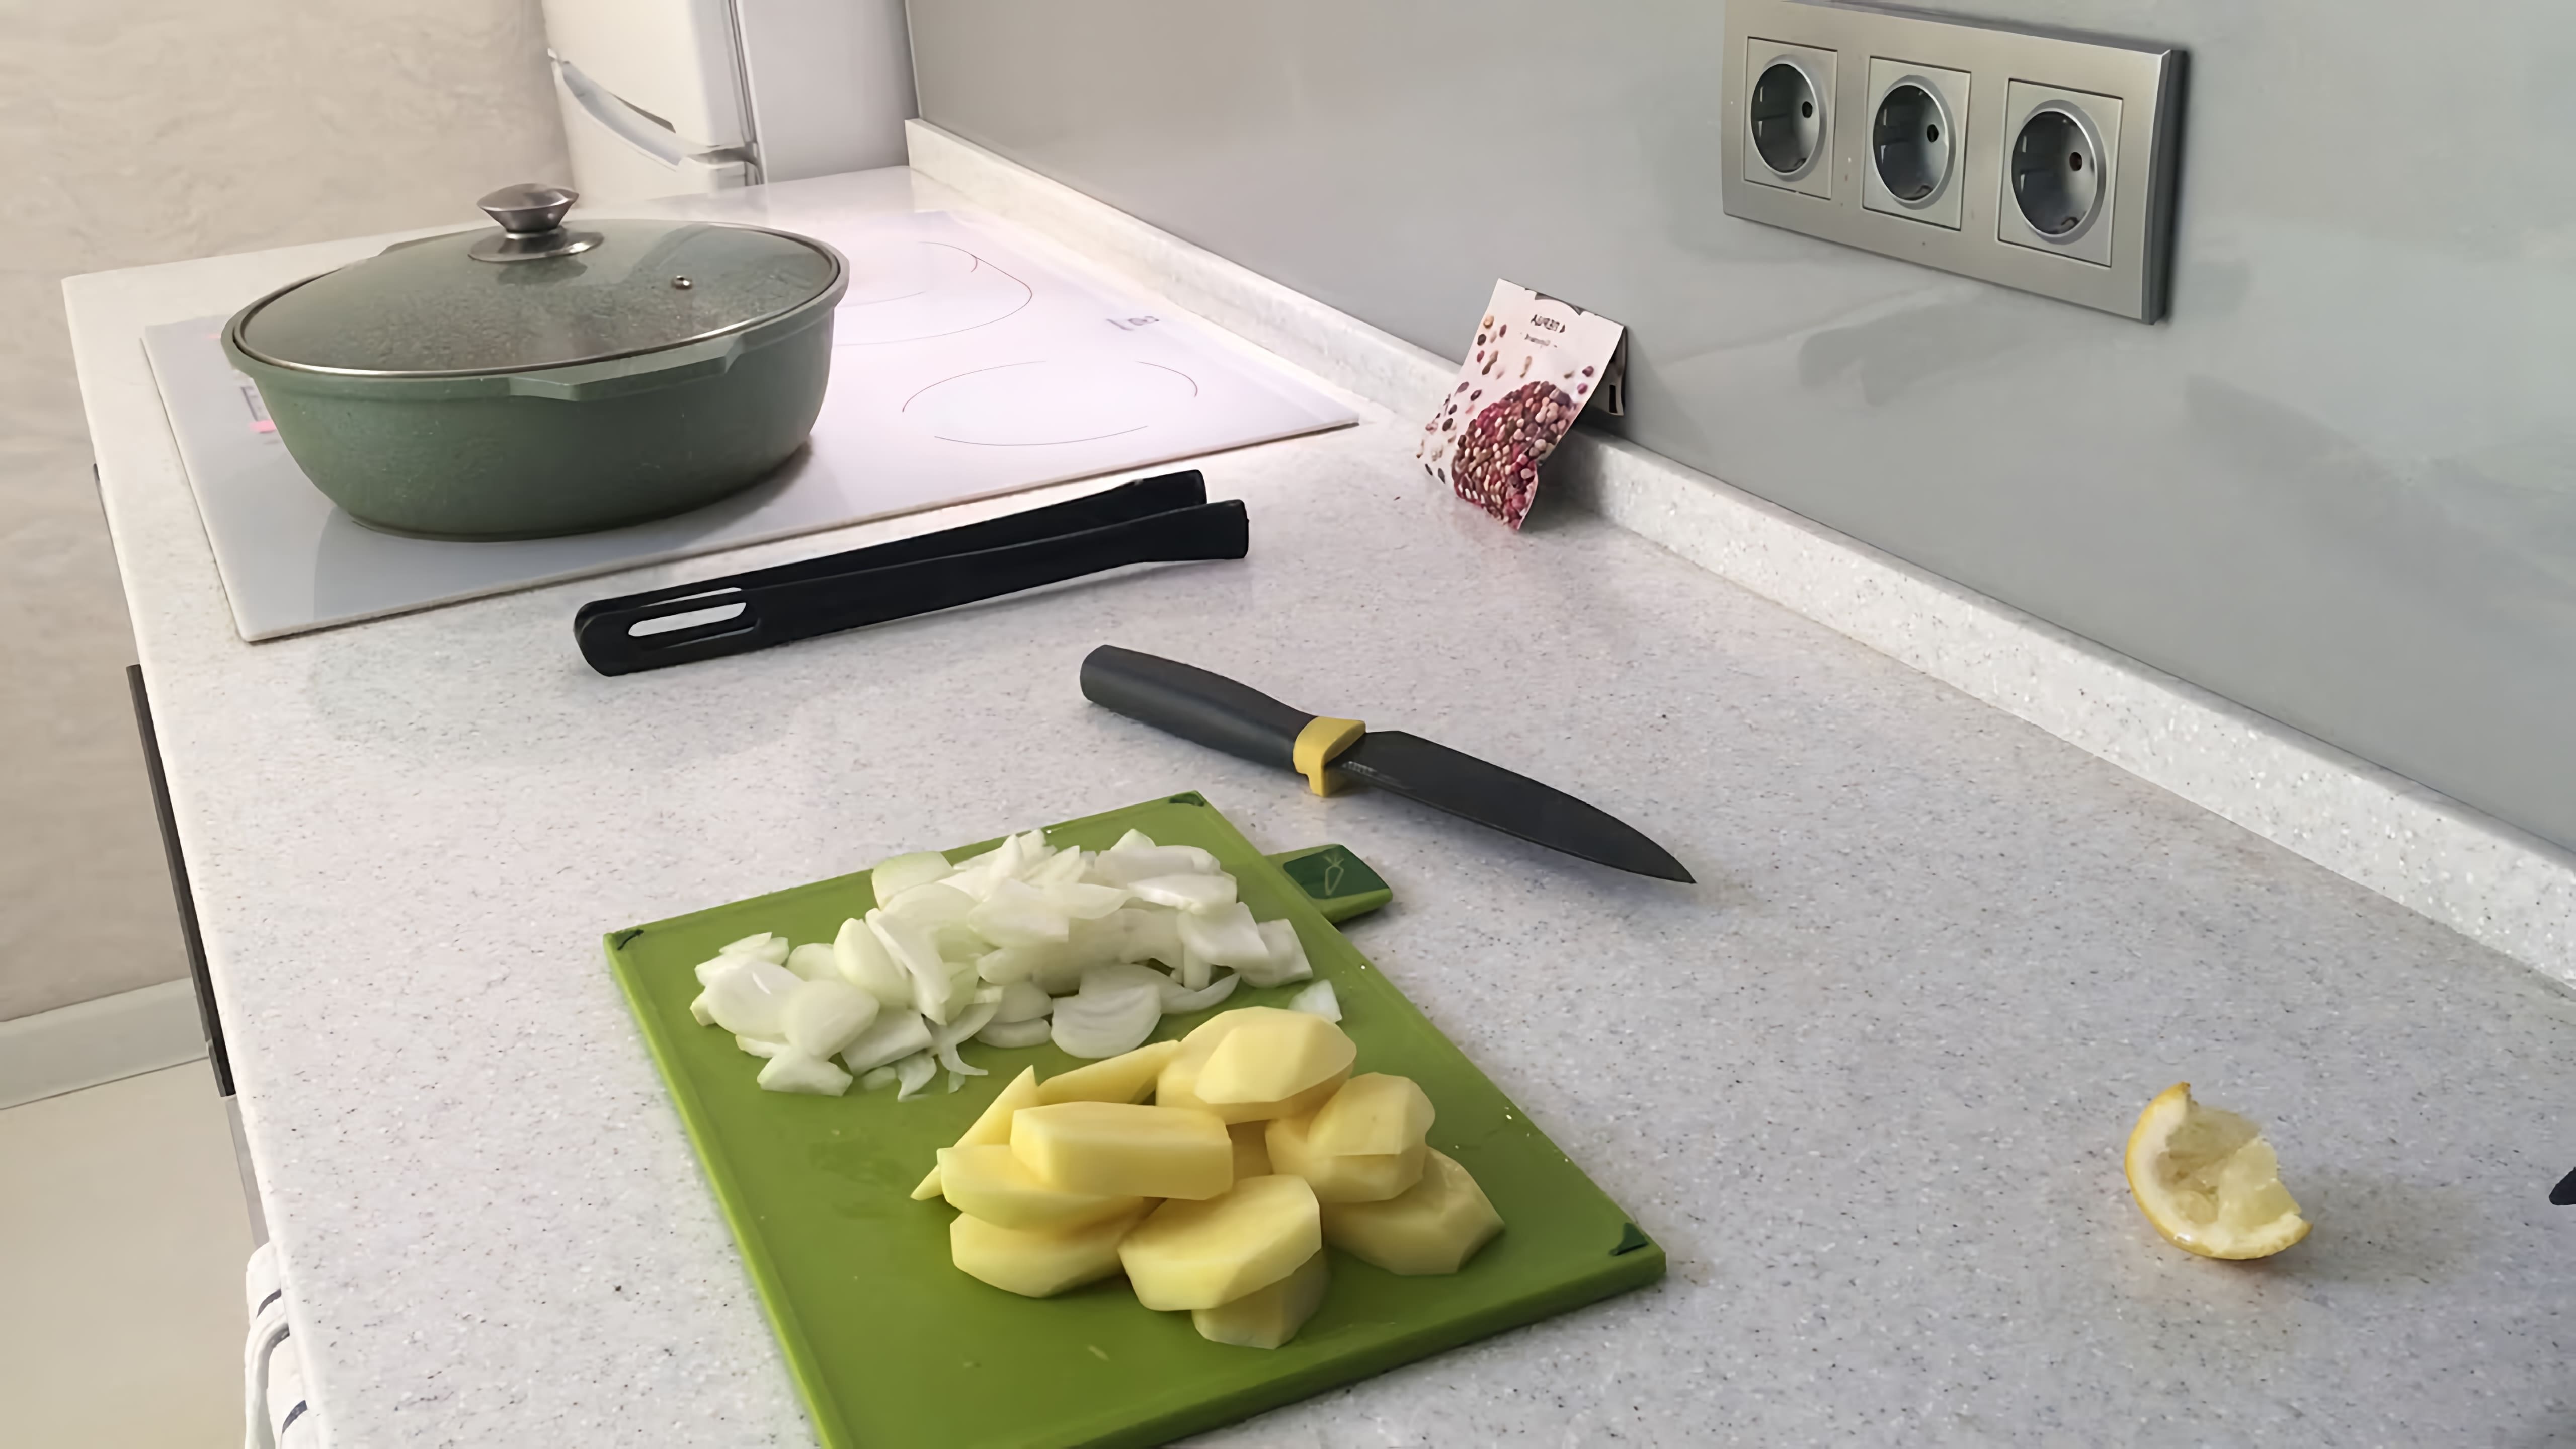 В этом видео повар демонстрирует процесс приготовления стерляди с картофелем в духовке